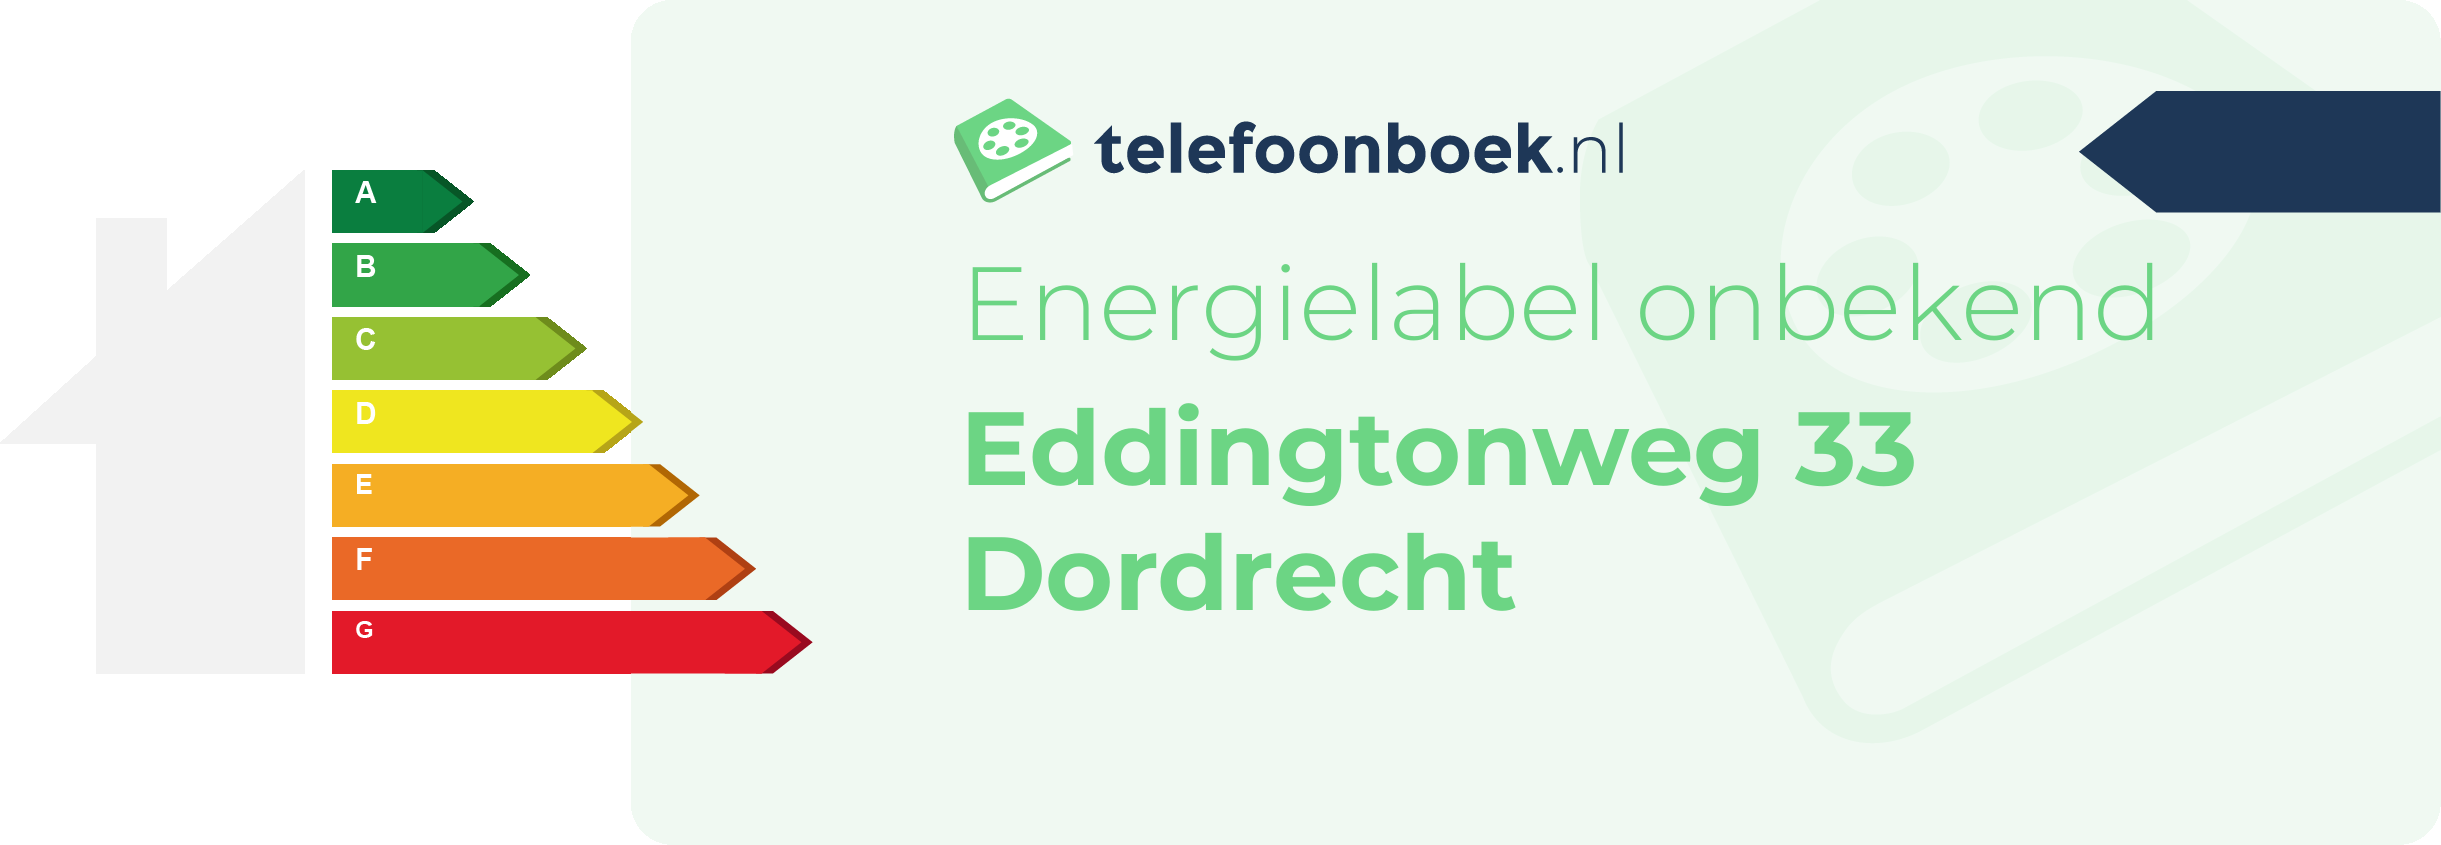 Energielabel Eddingtonweg 33 Dordrecht